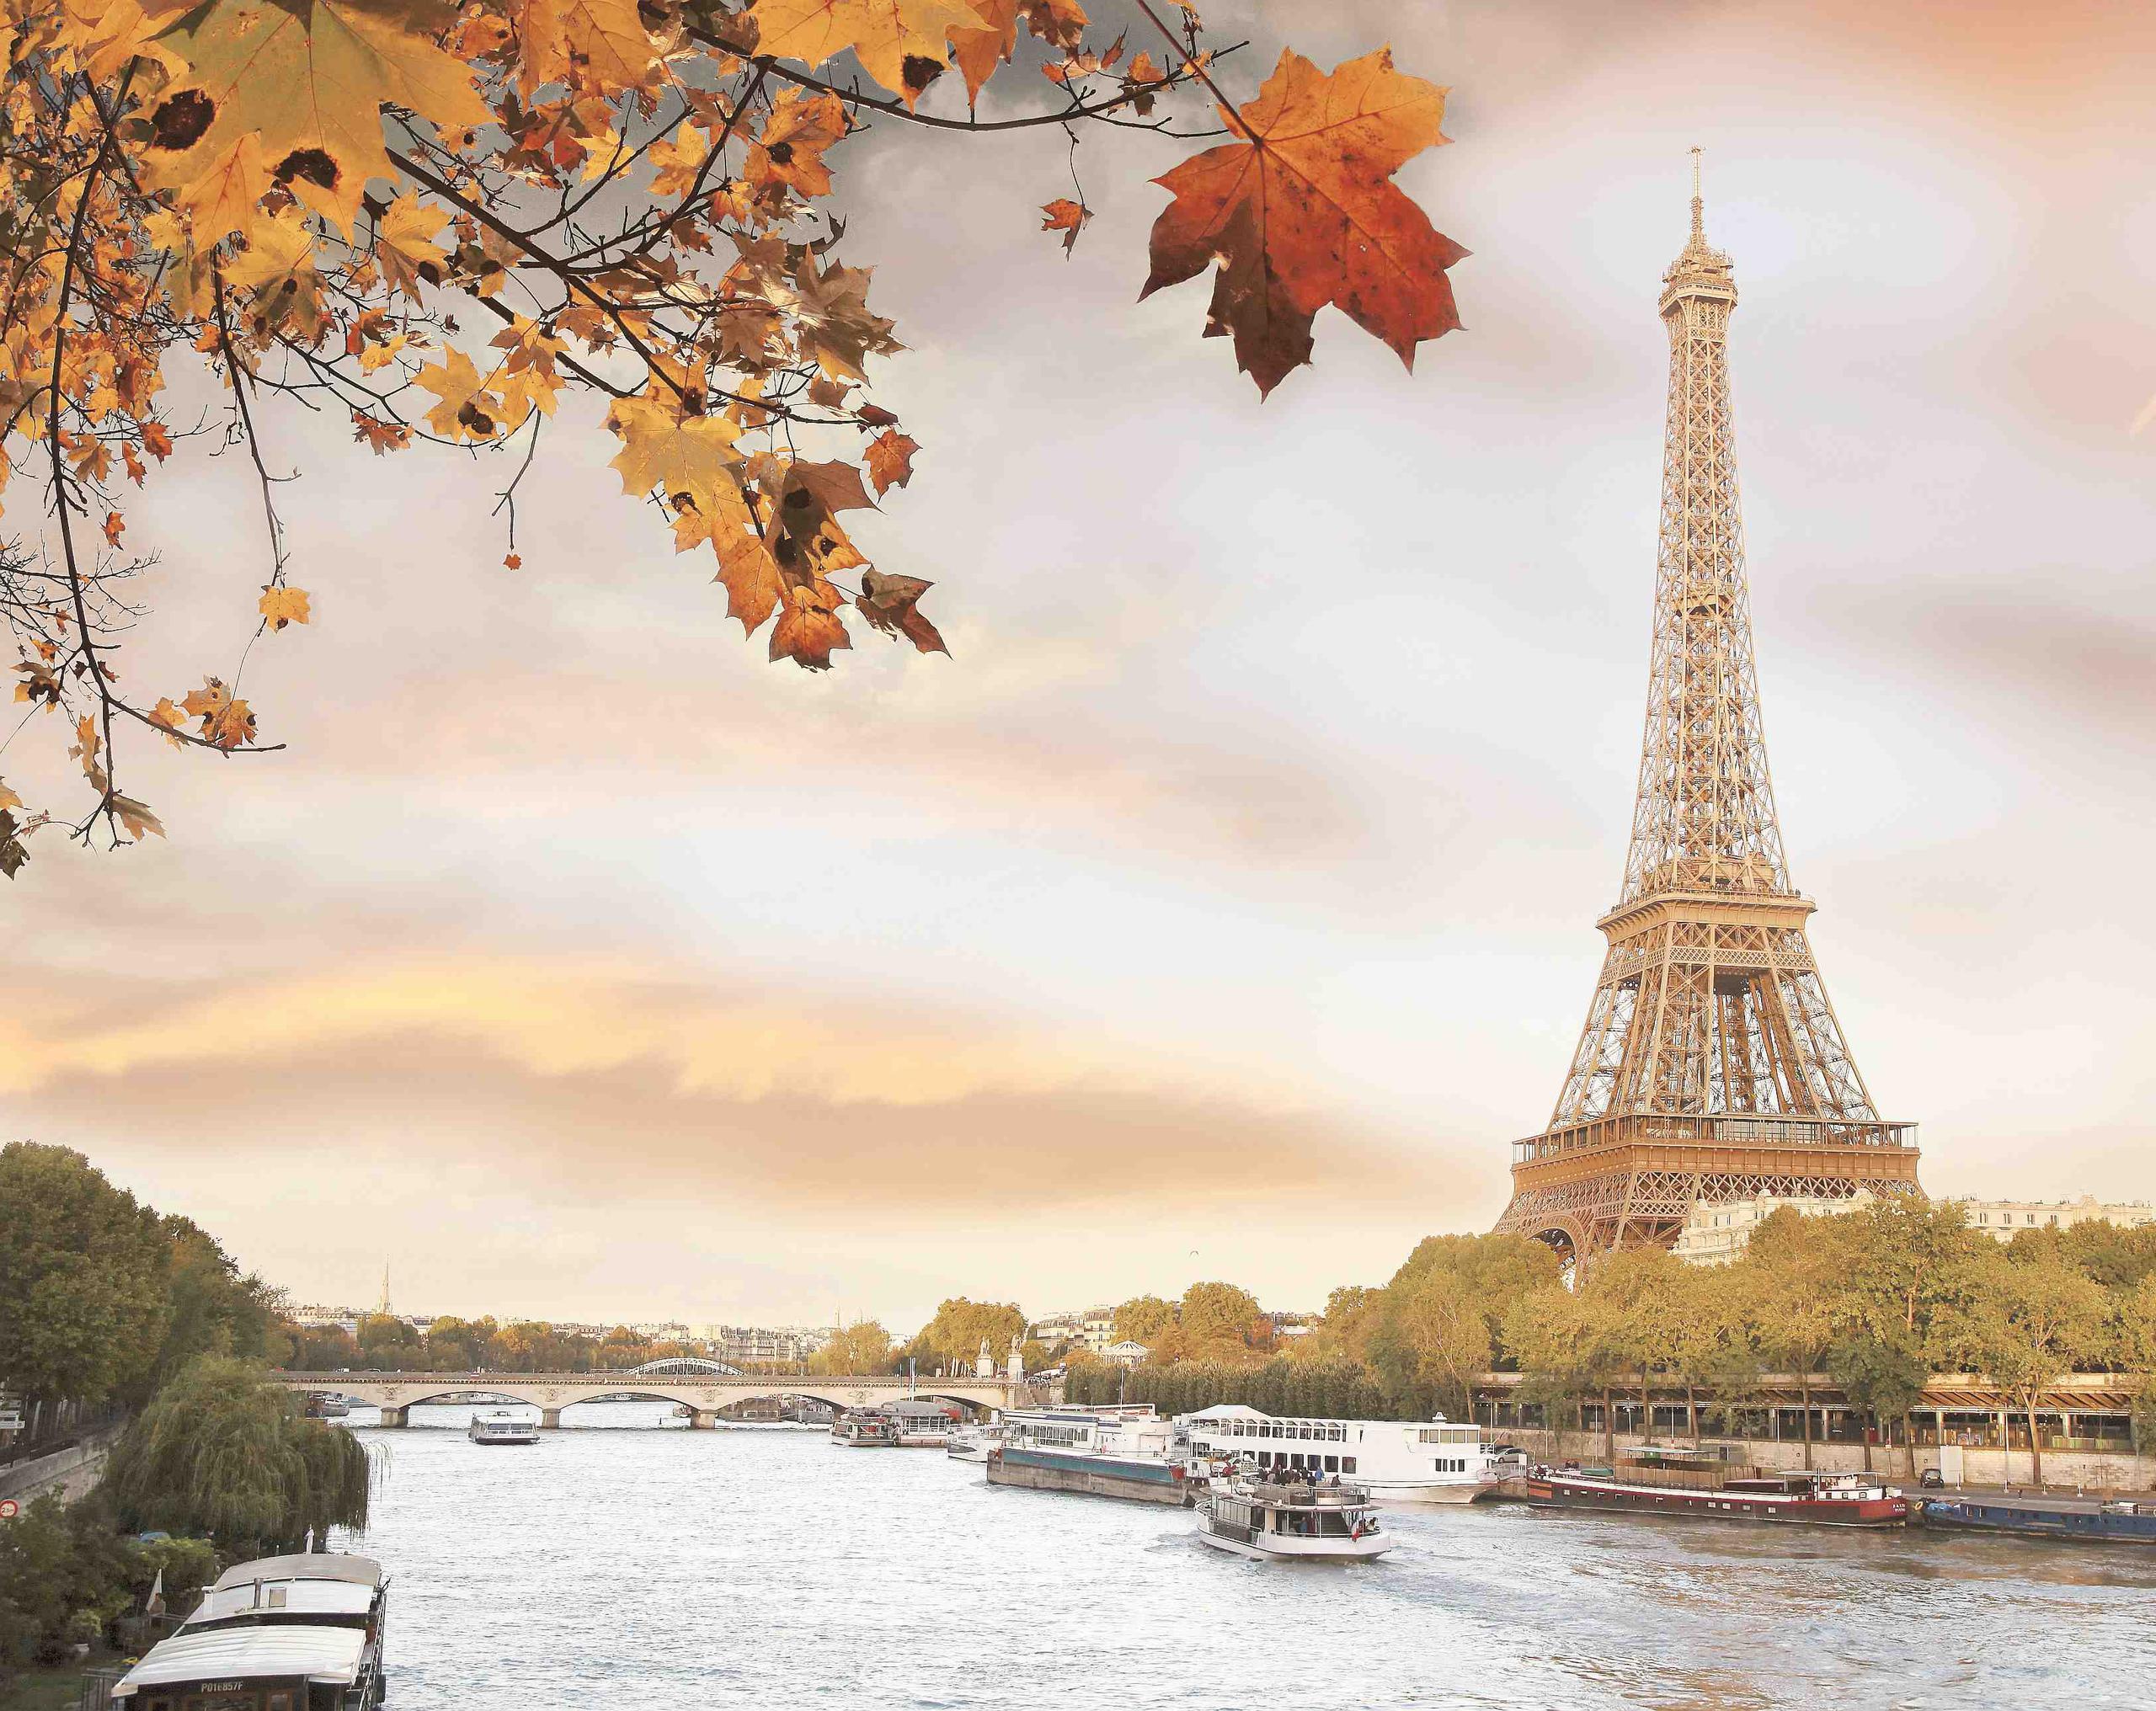 La torre Eiffel, uno de los monumentos más visitados del mundo desde que se inaugurase en 1889. (Archivo GFR Media)